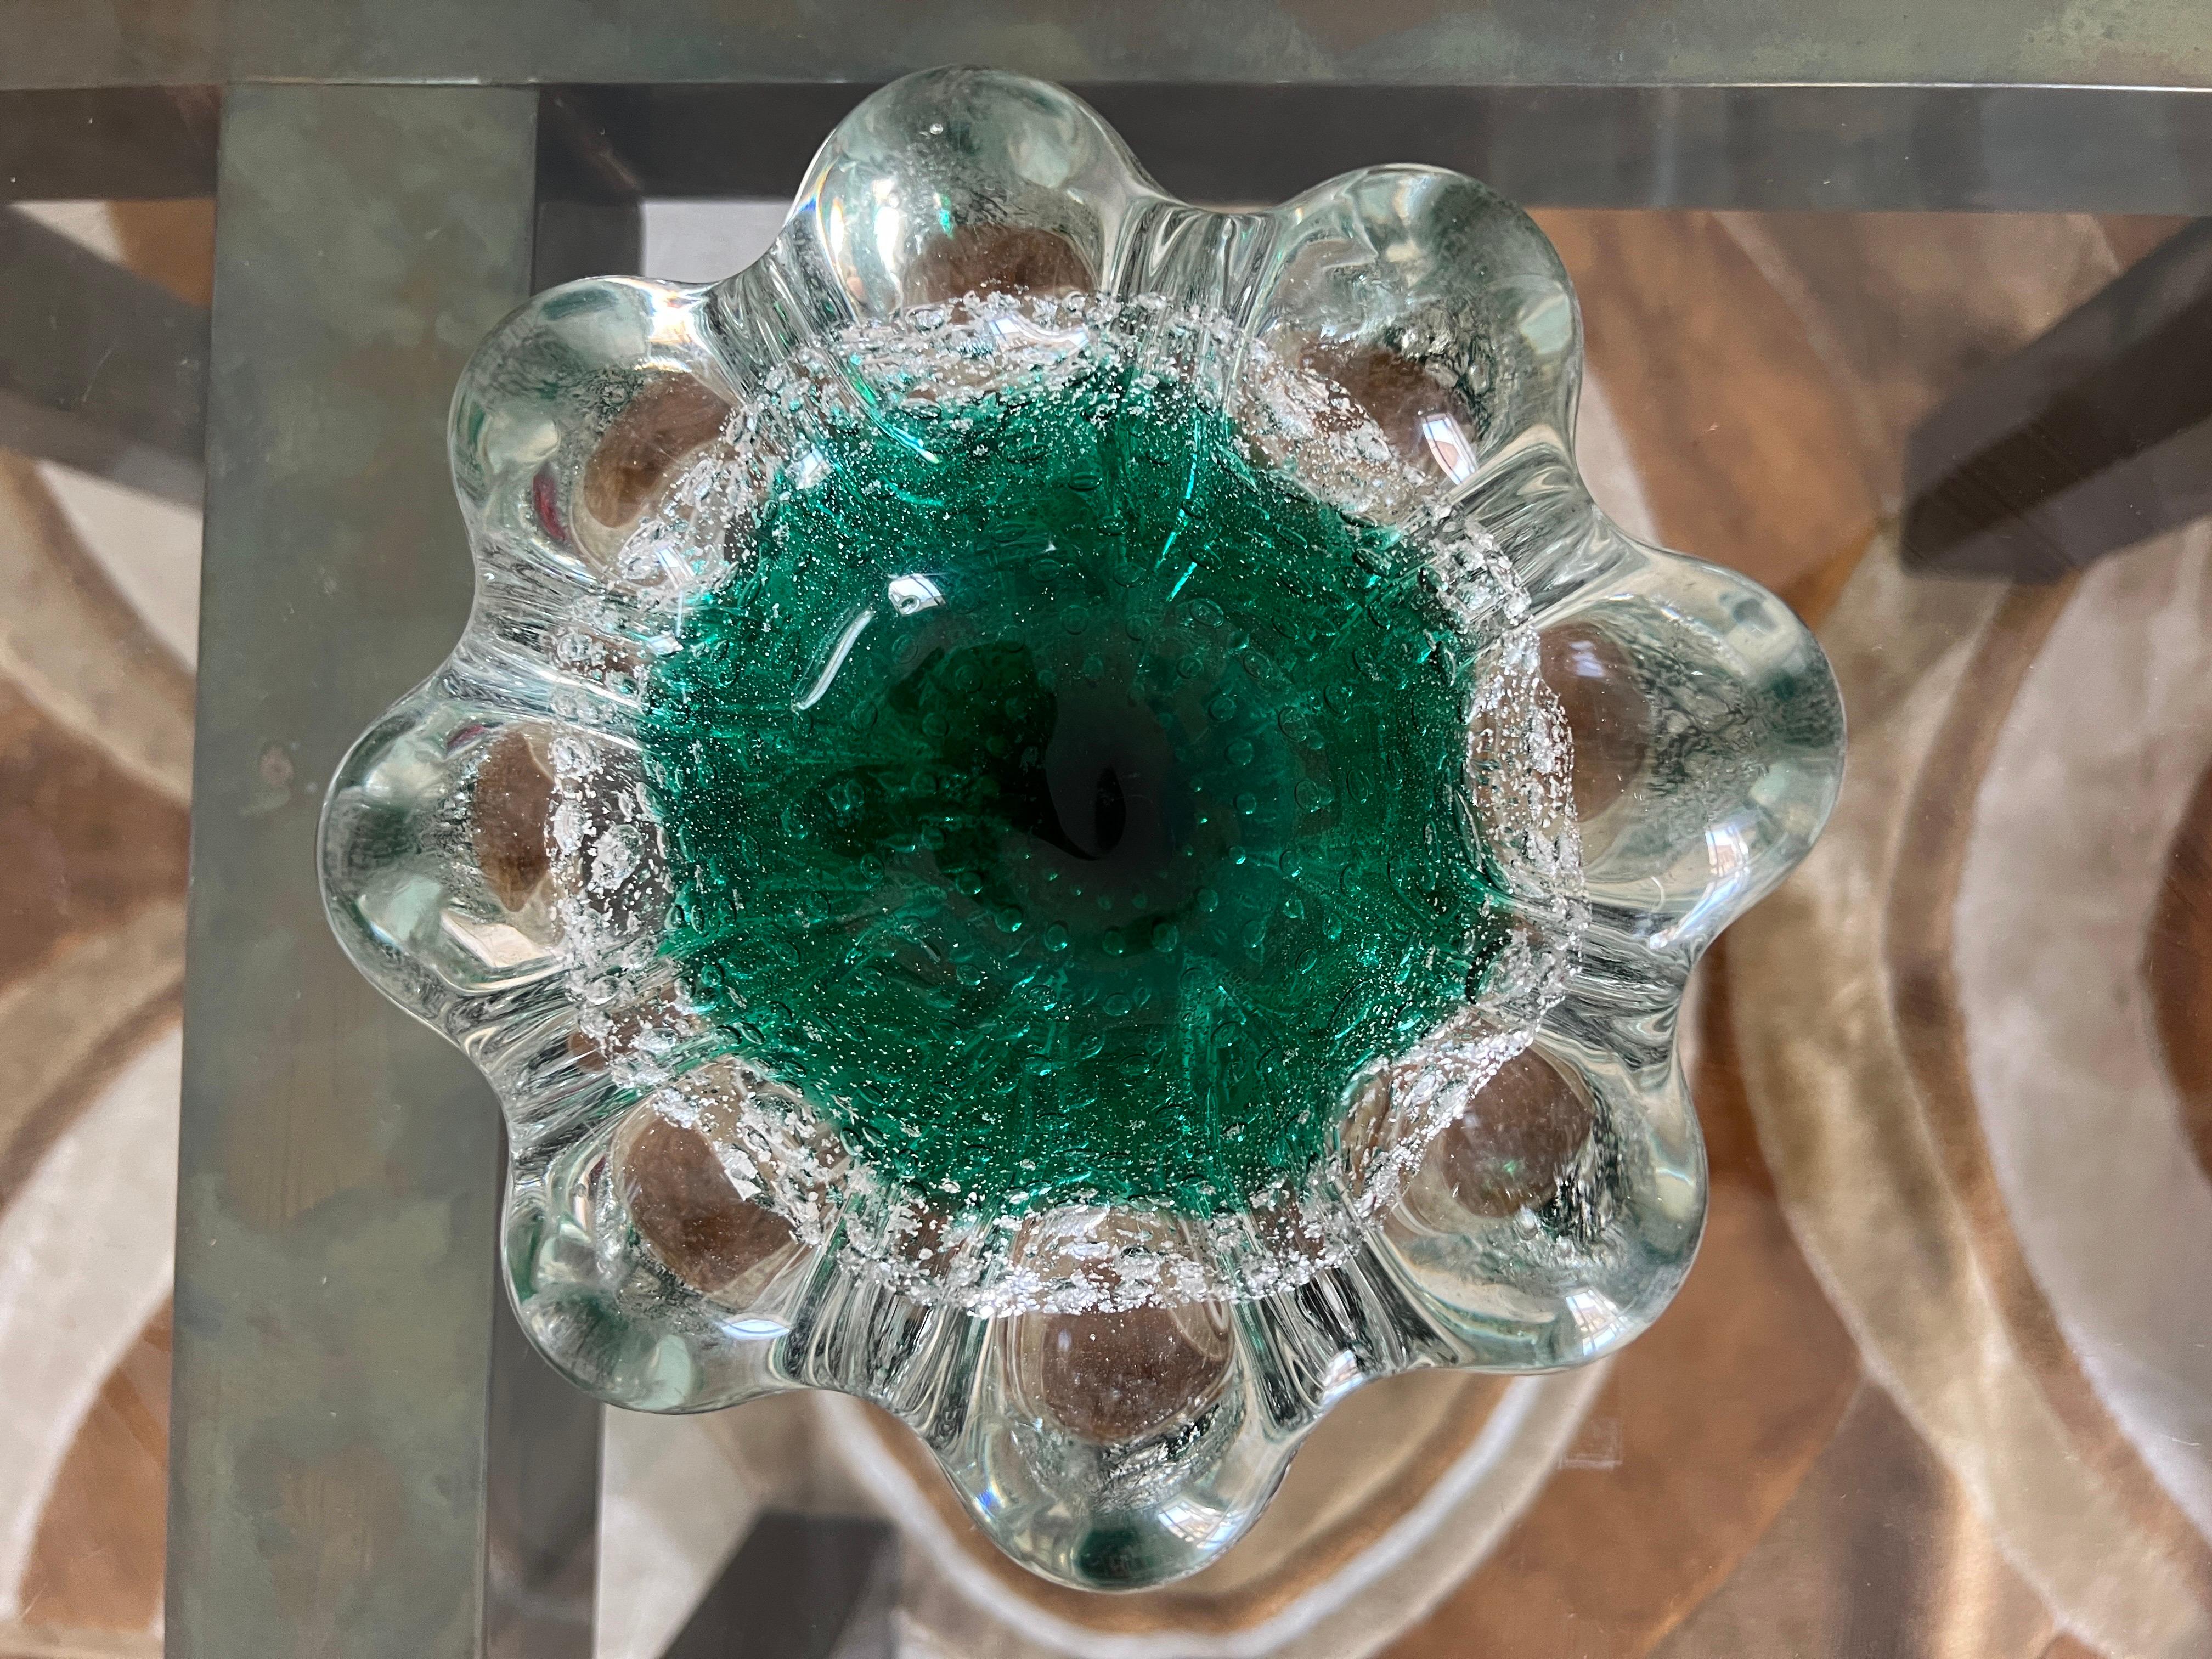 Wir präsentieren ein atemberaubendes Stück Murano-Glas von Seguso aus den 1970er Jahren - eine Schale oder einen Aschenbecher, der die berühmte Handwerkskunst der Seguso-Kunsthandwerker zeigt. Dieses exquisite Stück besteht aus einer Mischung aus